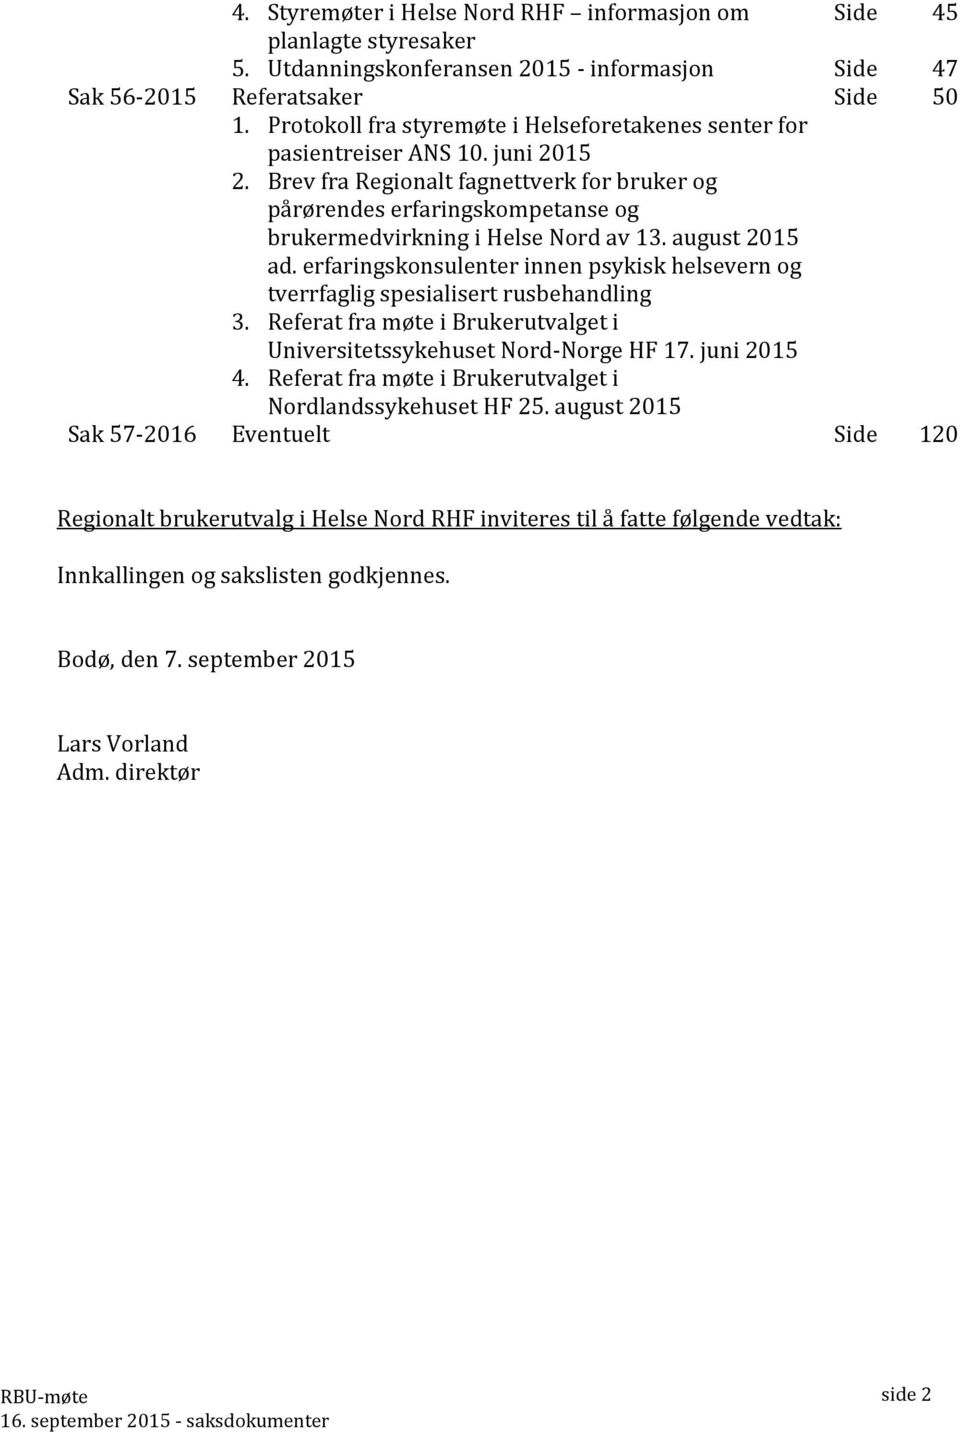 Brev fra Regionalt fagnettverk for bruker og pårørendes erfaringskompetanse og brukermedvirkning i Helse Nord av 13. august 2015 ad.